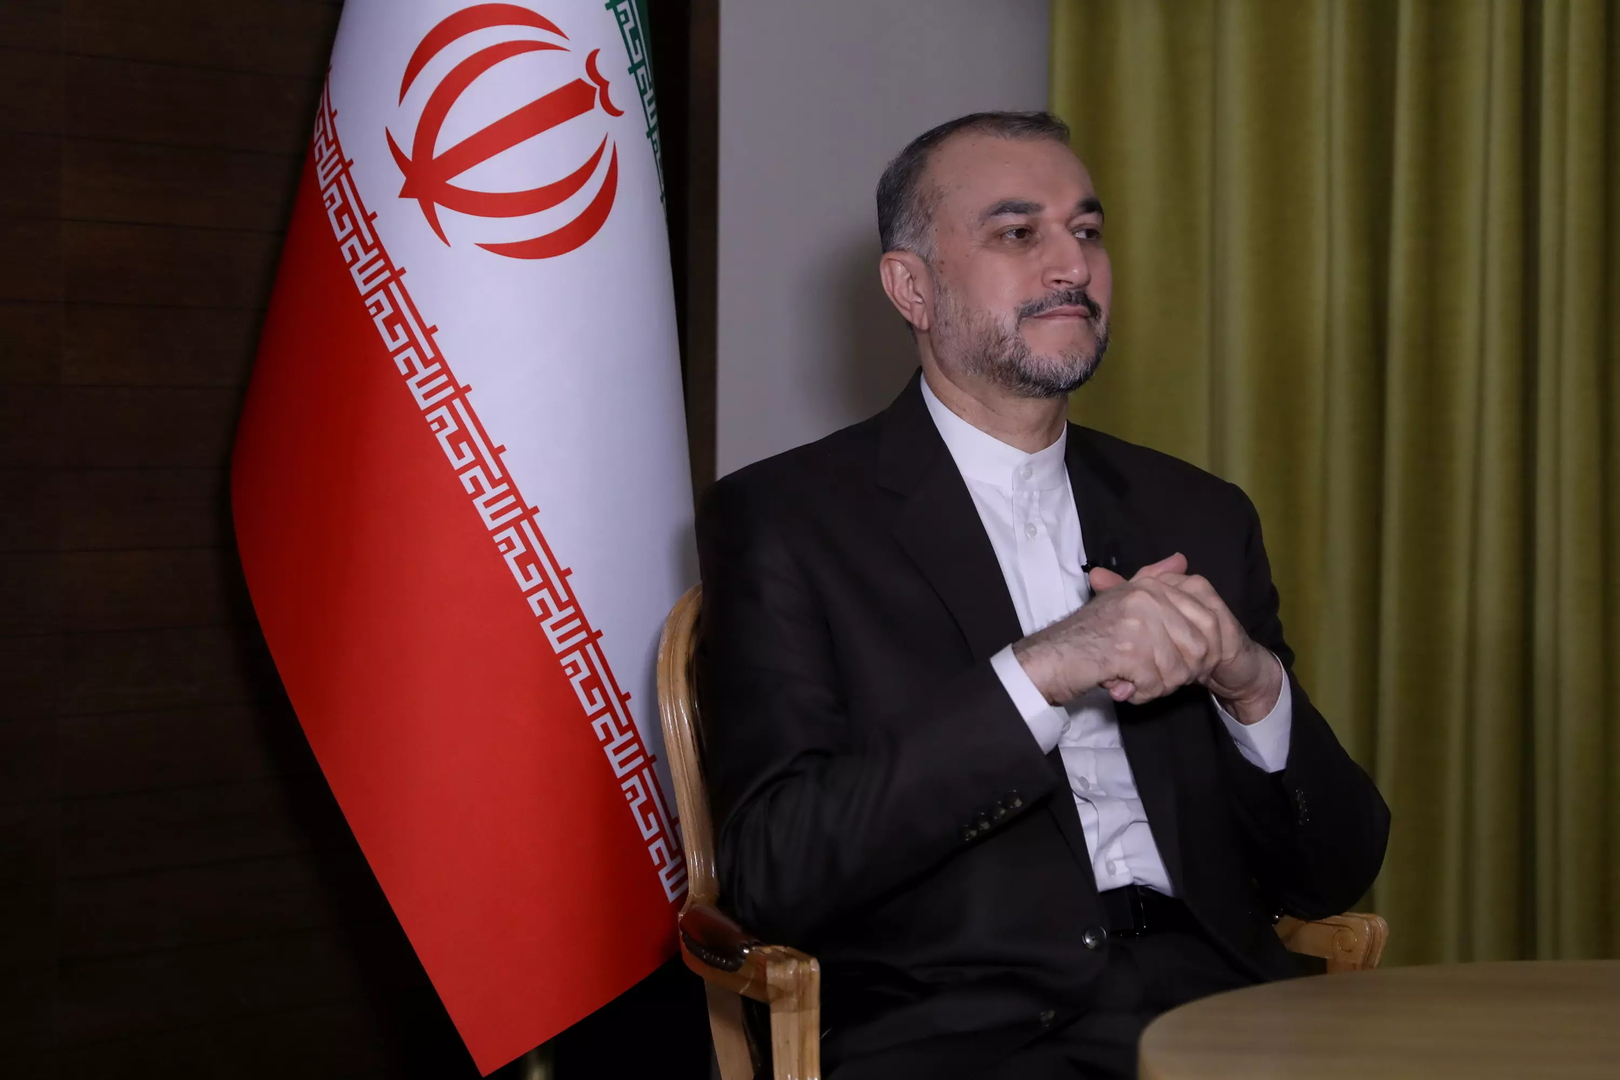 عبد اللهيان يكشف تفاصيل المراسلات بين طهران وواشنطن قبل وبعد الهجوم على إسرائيل